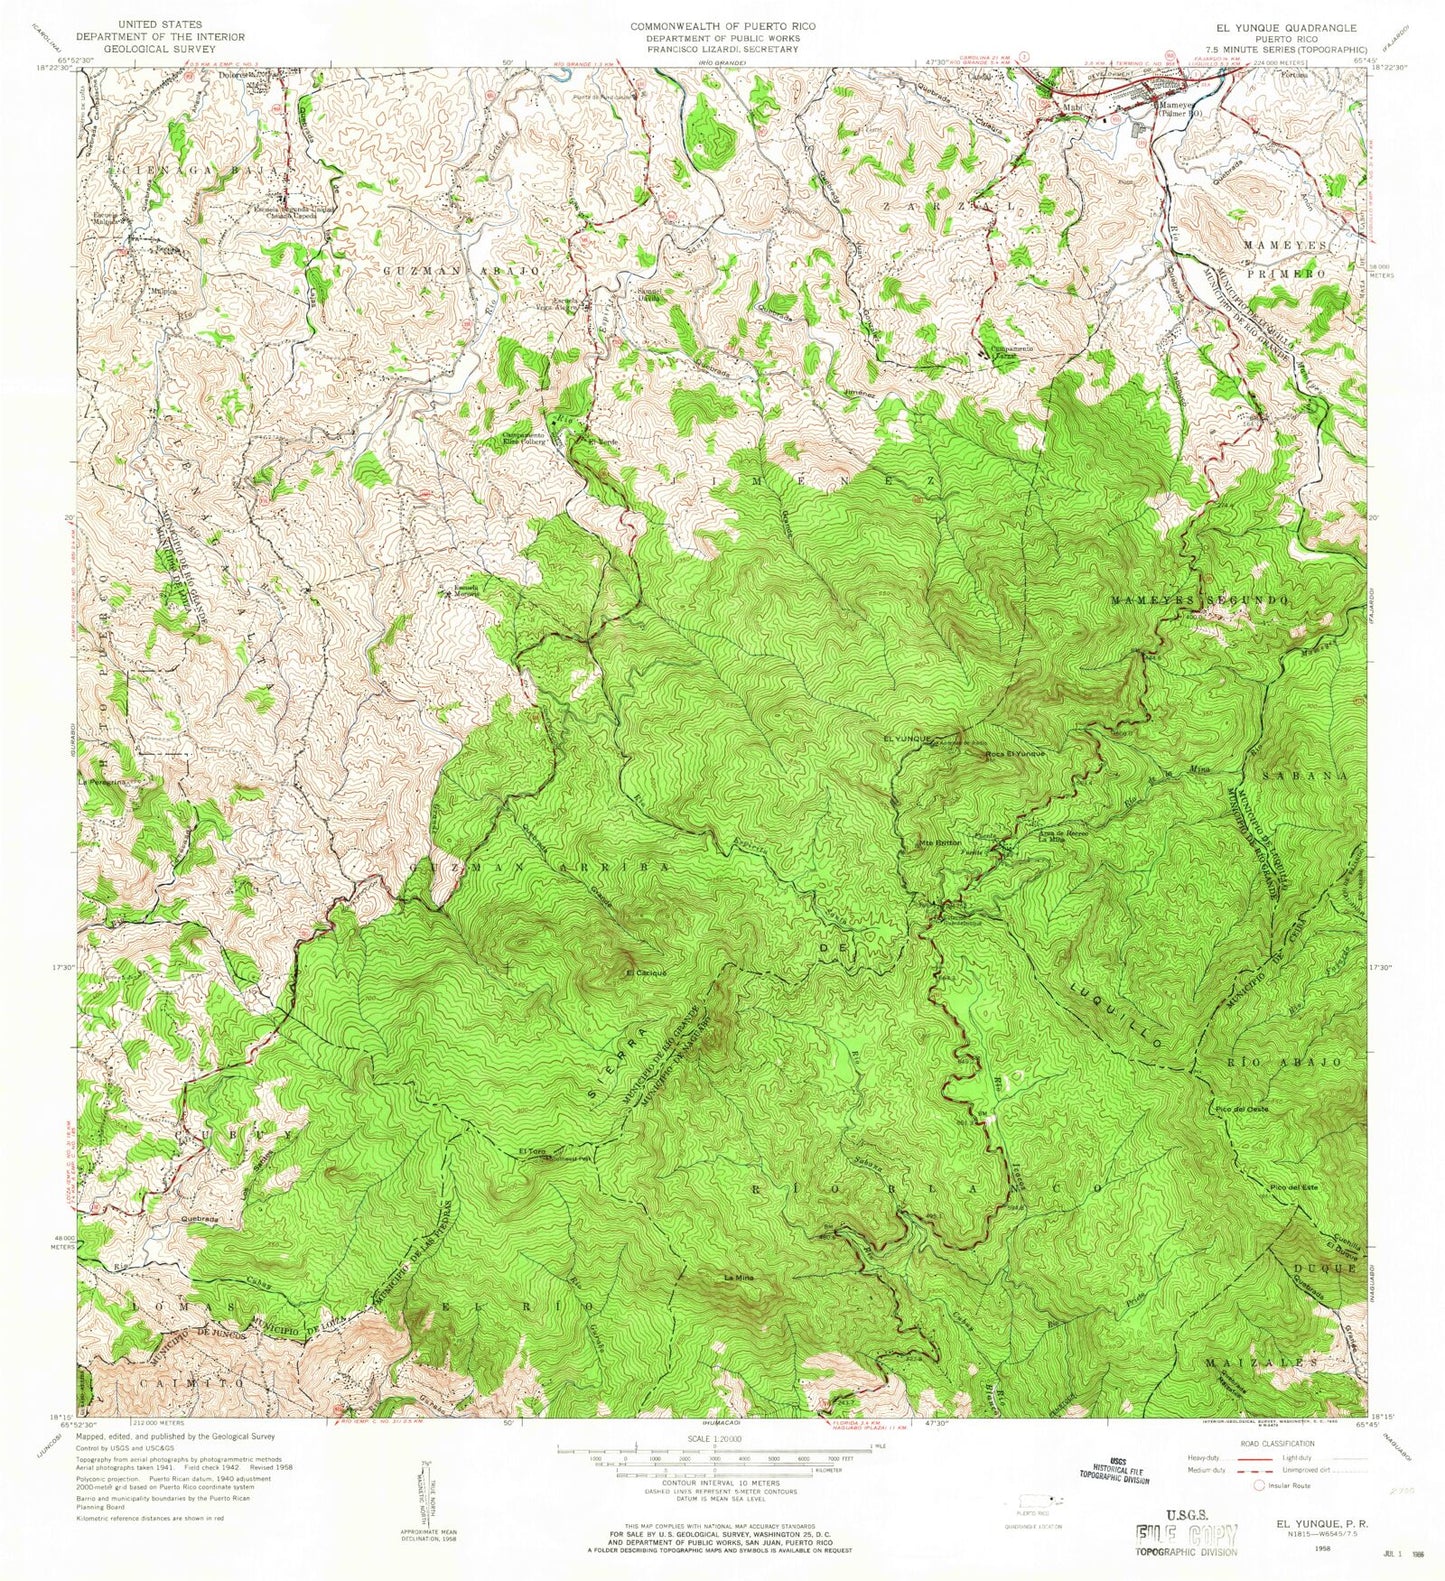 Classic USGS El Yunque Puerto Rico 7.5'x7.5' Topo Map Image